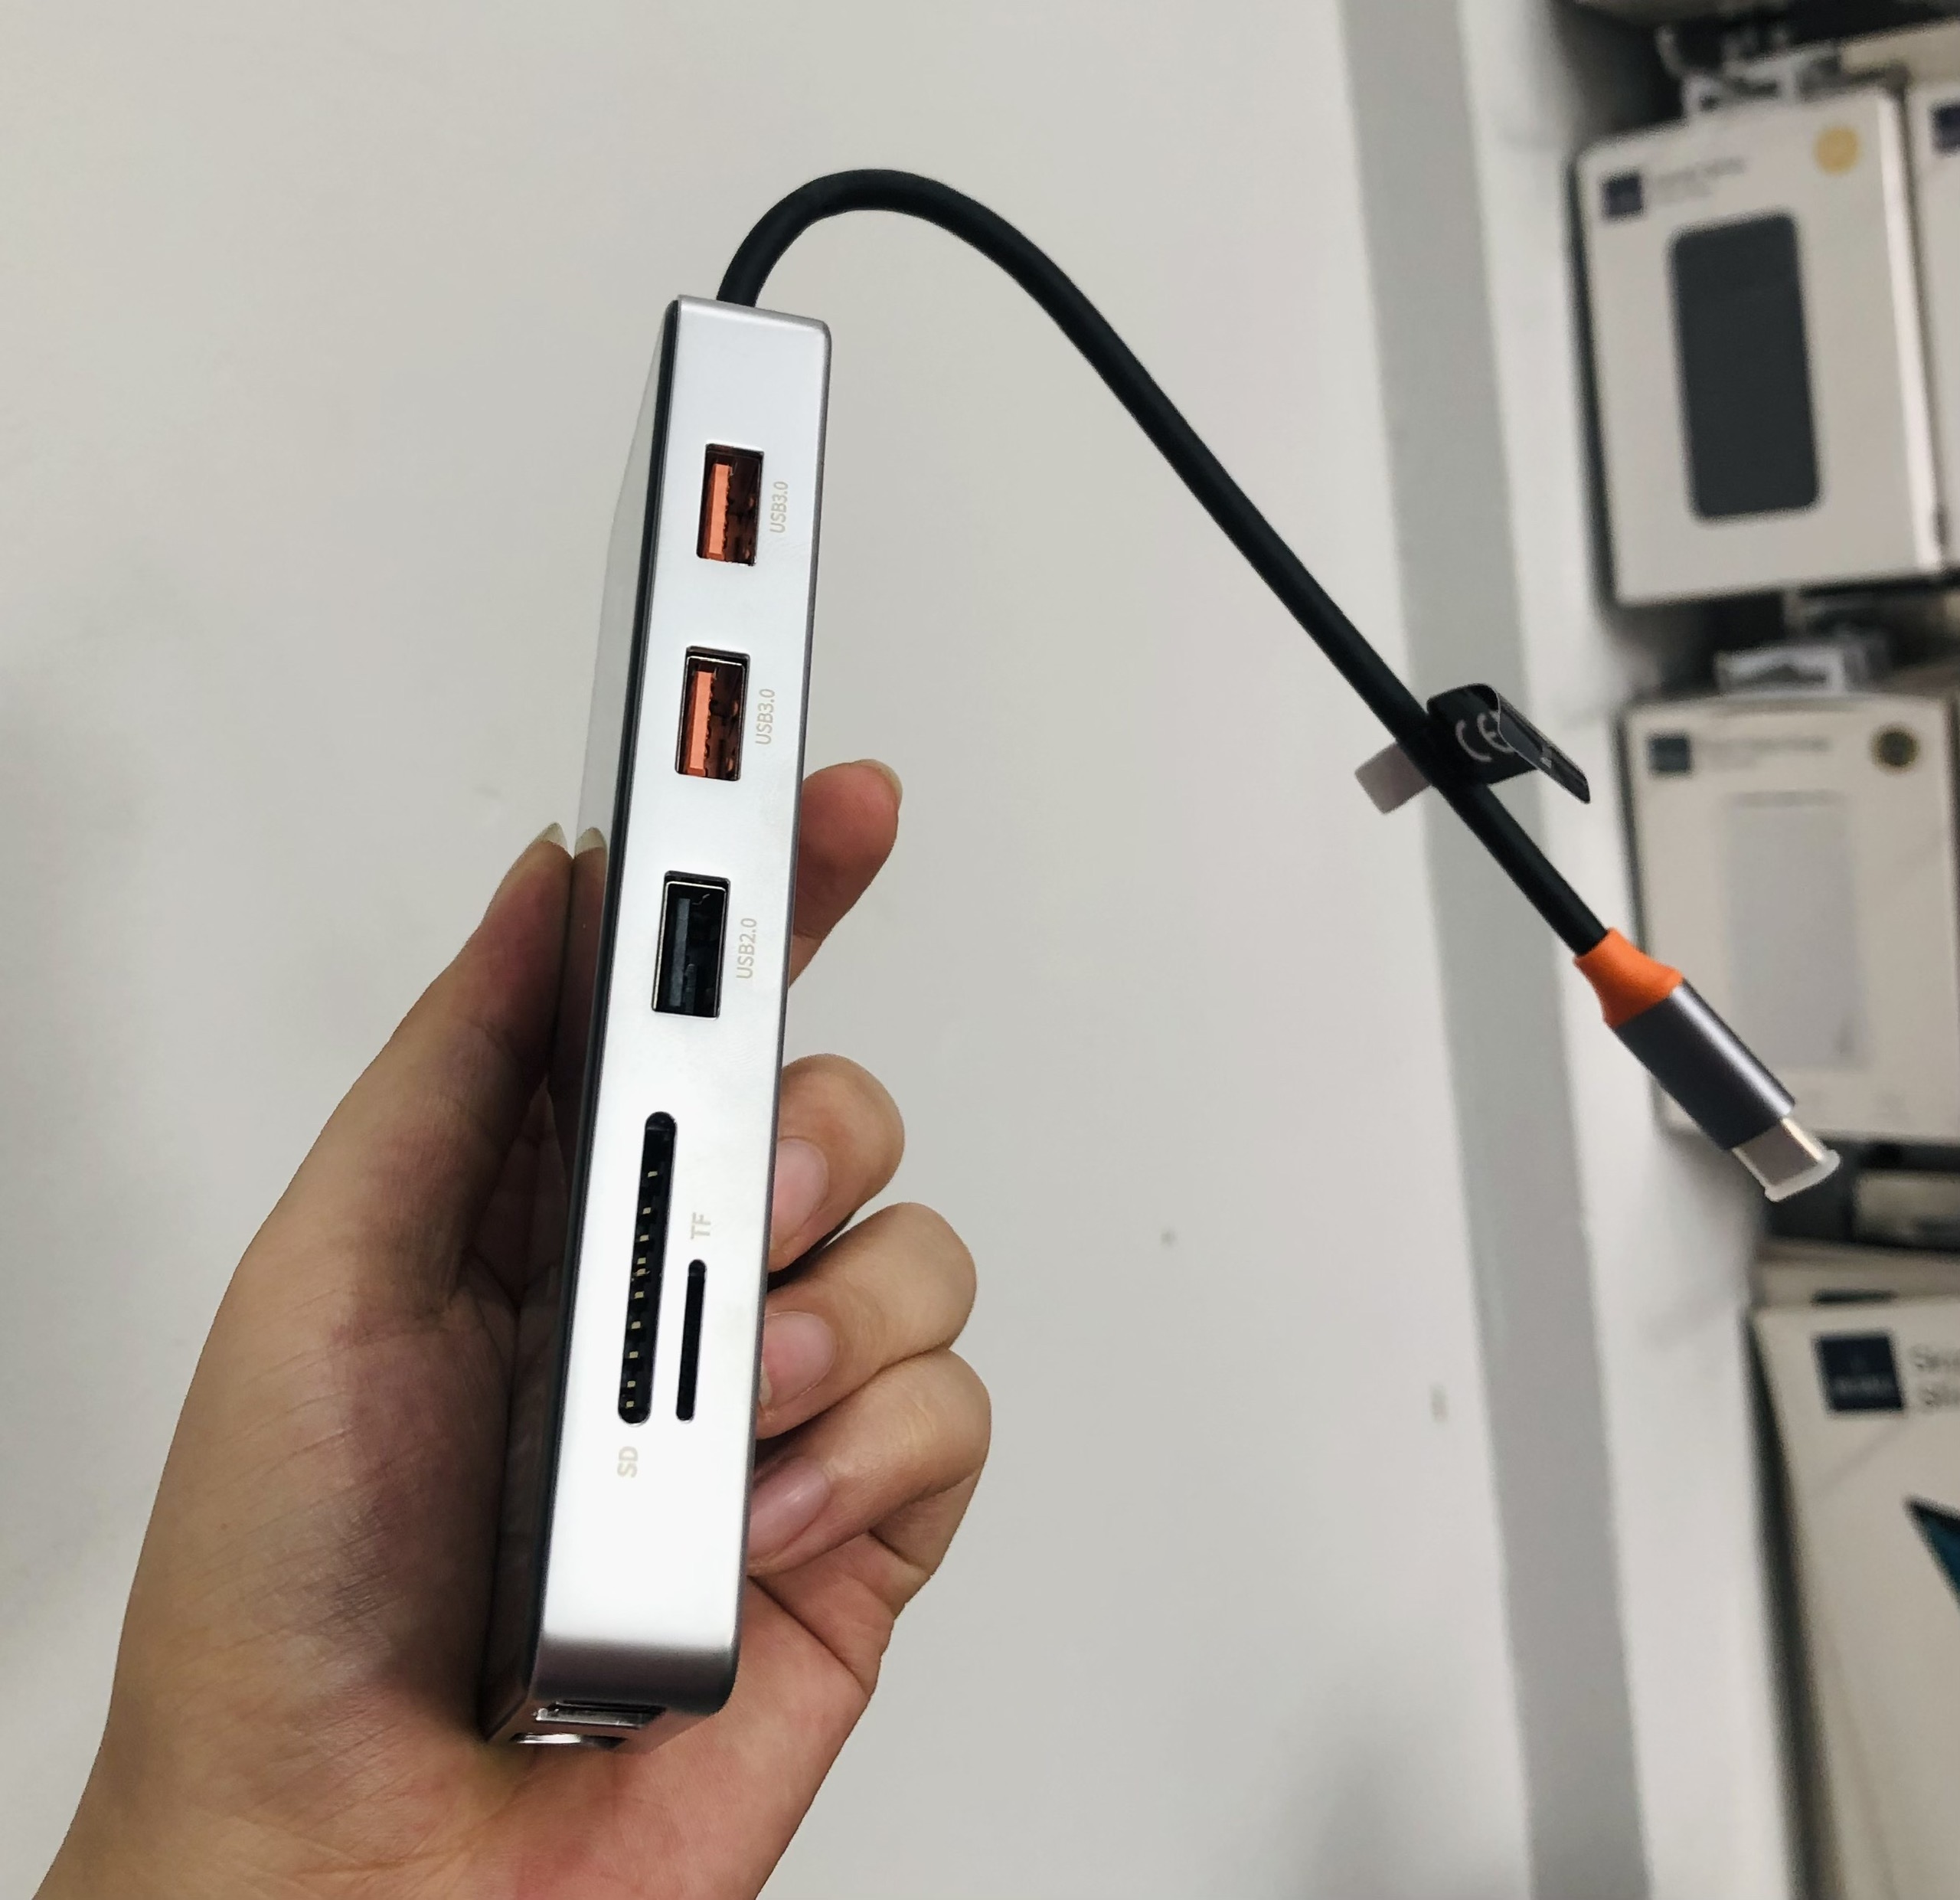 Hub Wiwu Cyber 12in1 USB-C CB012 kết nối nhiều thiết bị hơn với nhiều cổng, chất liệu nhôm và mặt nhựa trong suốt để lộ ra phần vi mạch bên trong- Hàng chính hãng